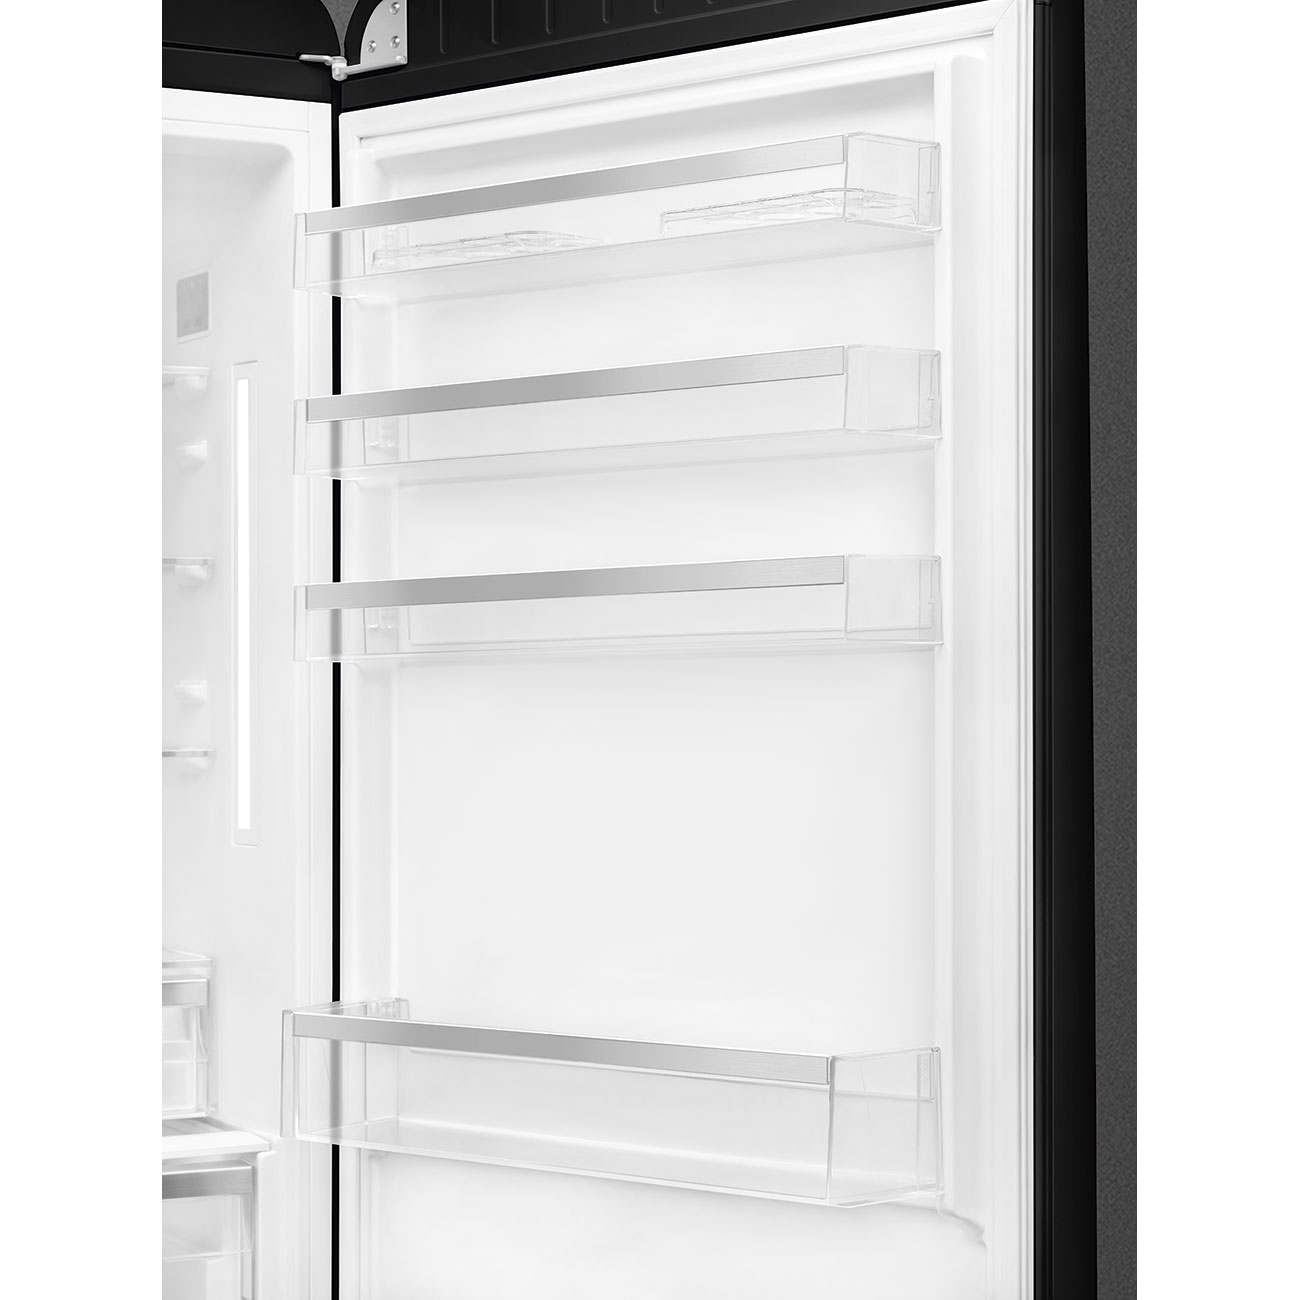 Black refrigerator - Smeg_8